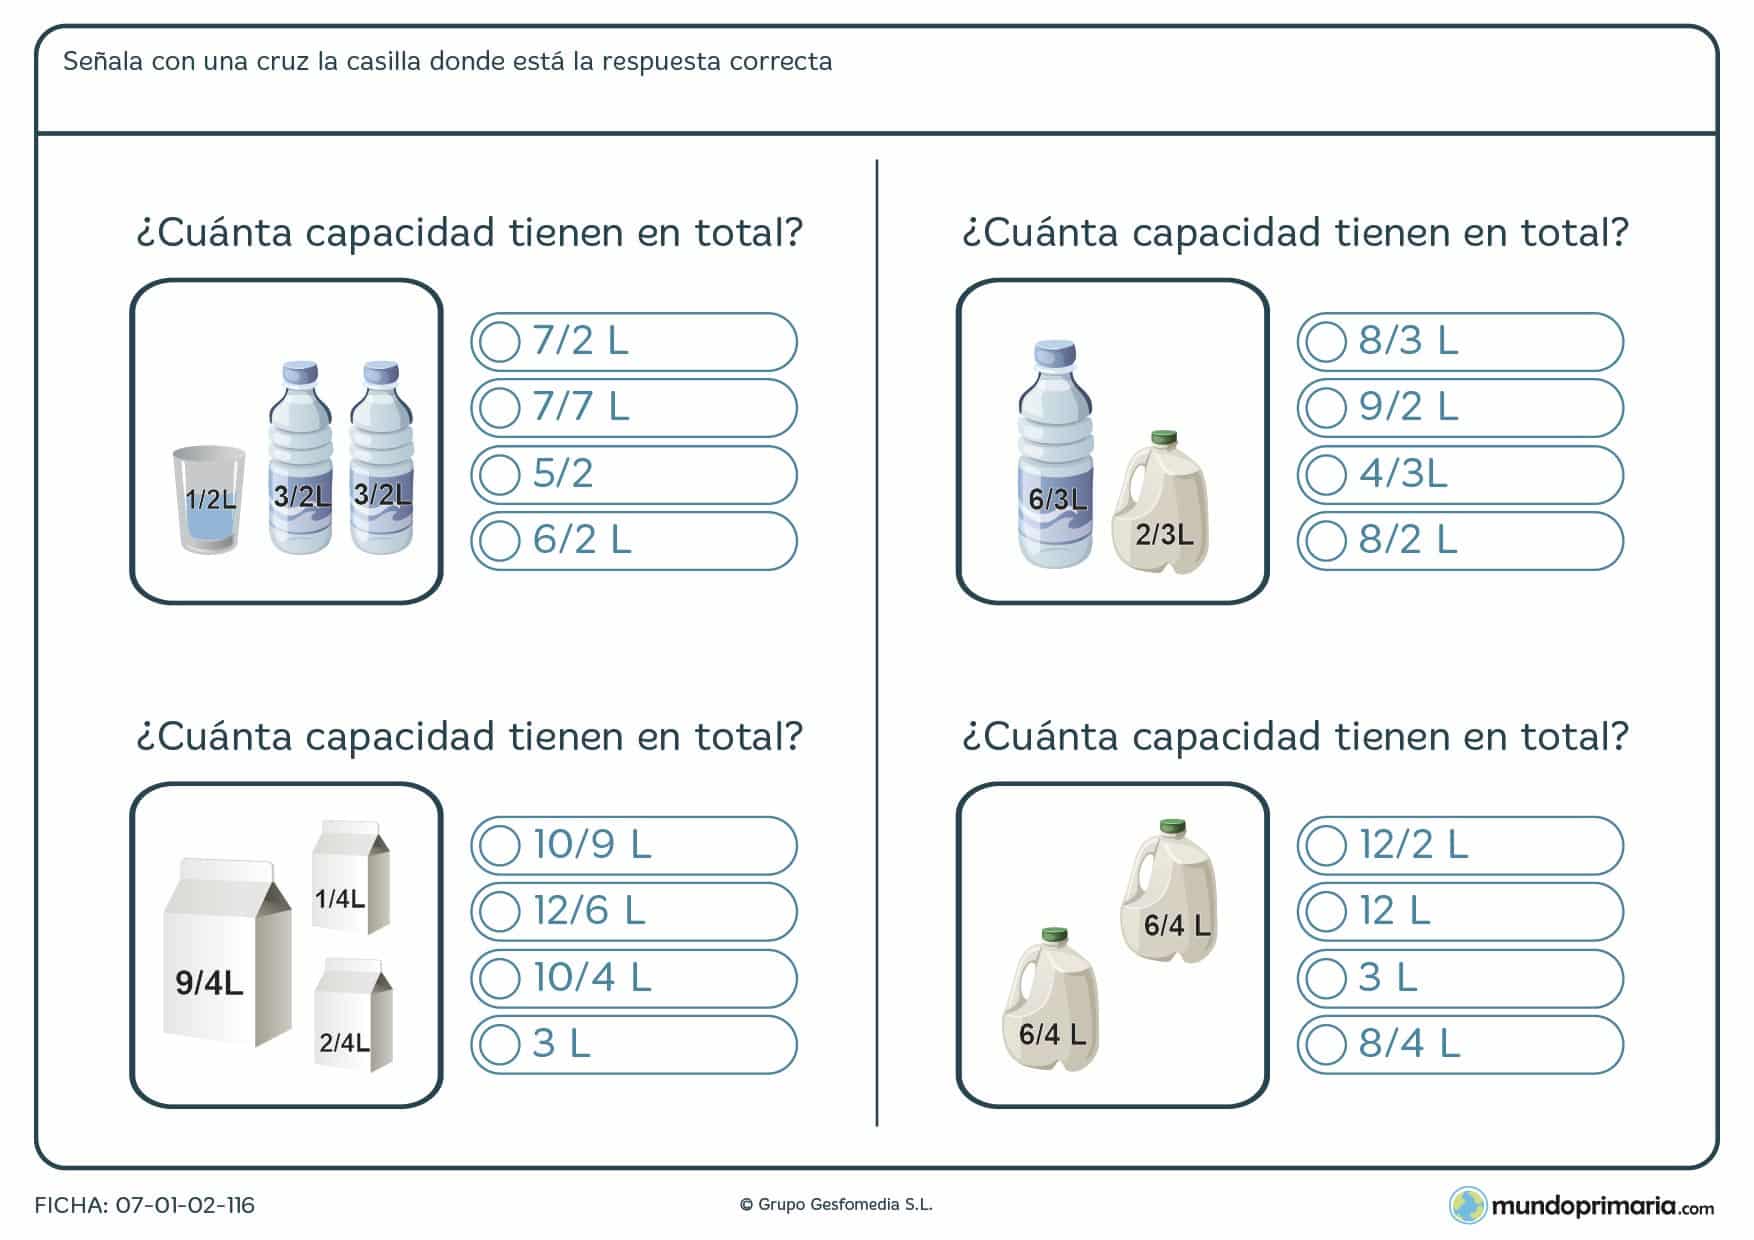 Ficha de sumar capacidades de recipientes de líquidos y señalar la respuesta correcta entre 4 opciones.